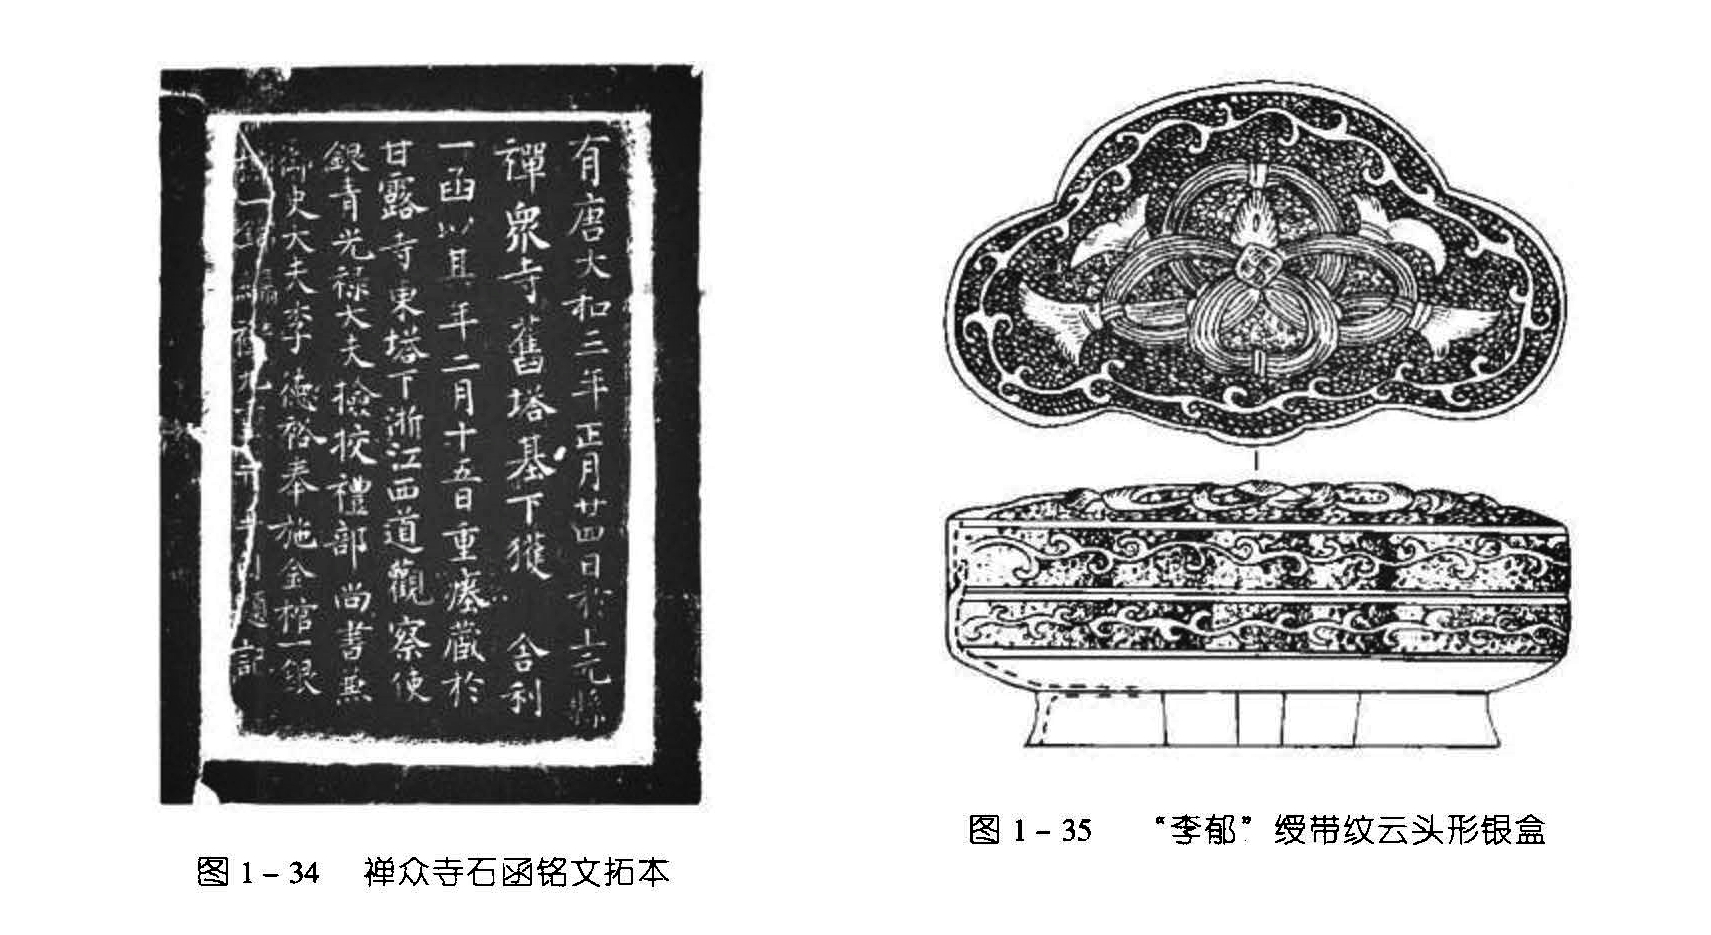 图 1-35 “李郁”绶带纹云头形铜盒 图 1-34 禪众寺石函铭文拓本